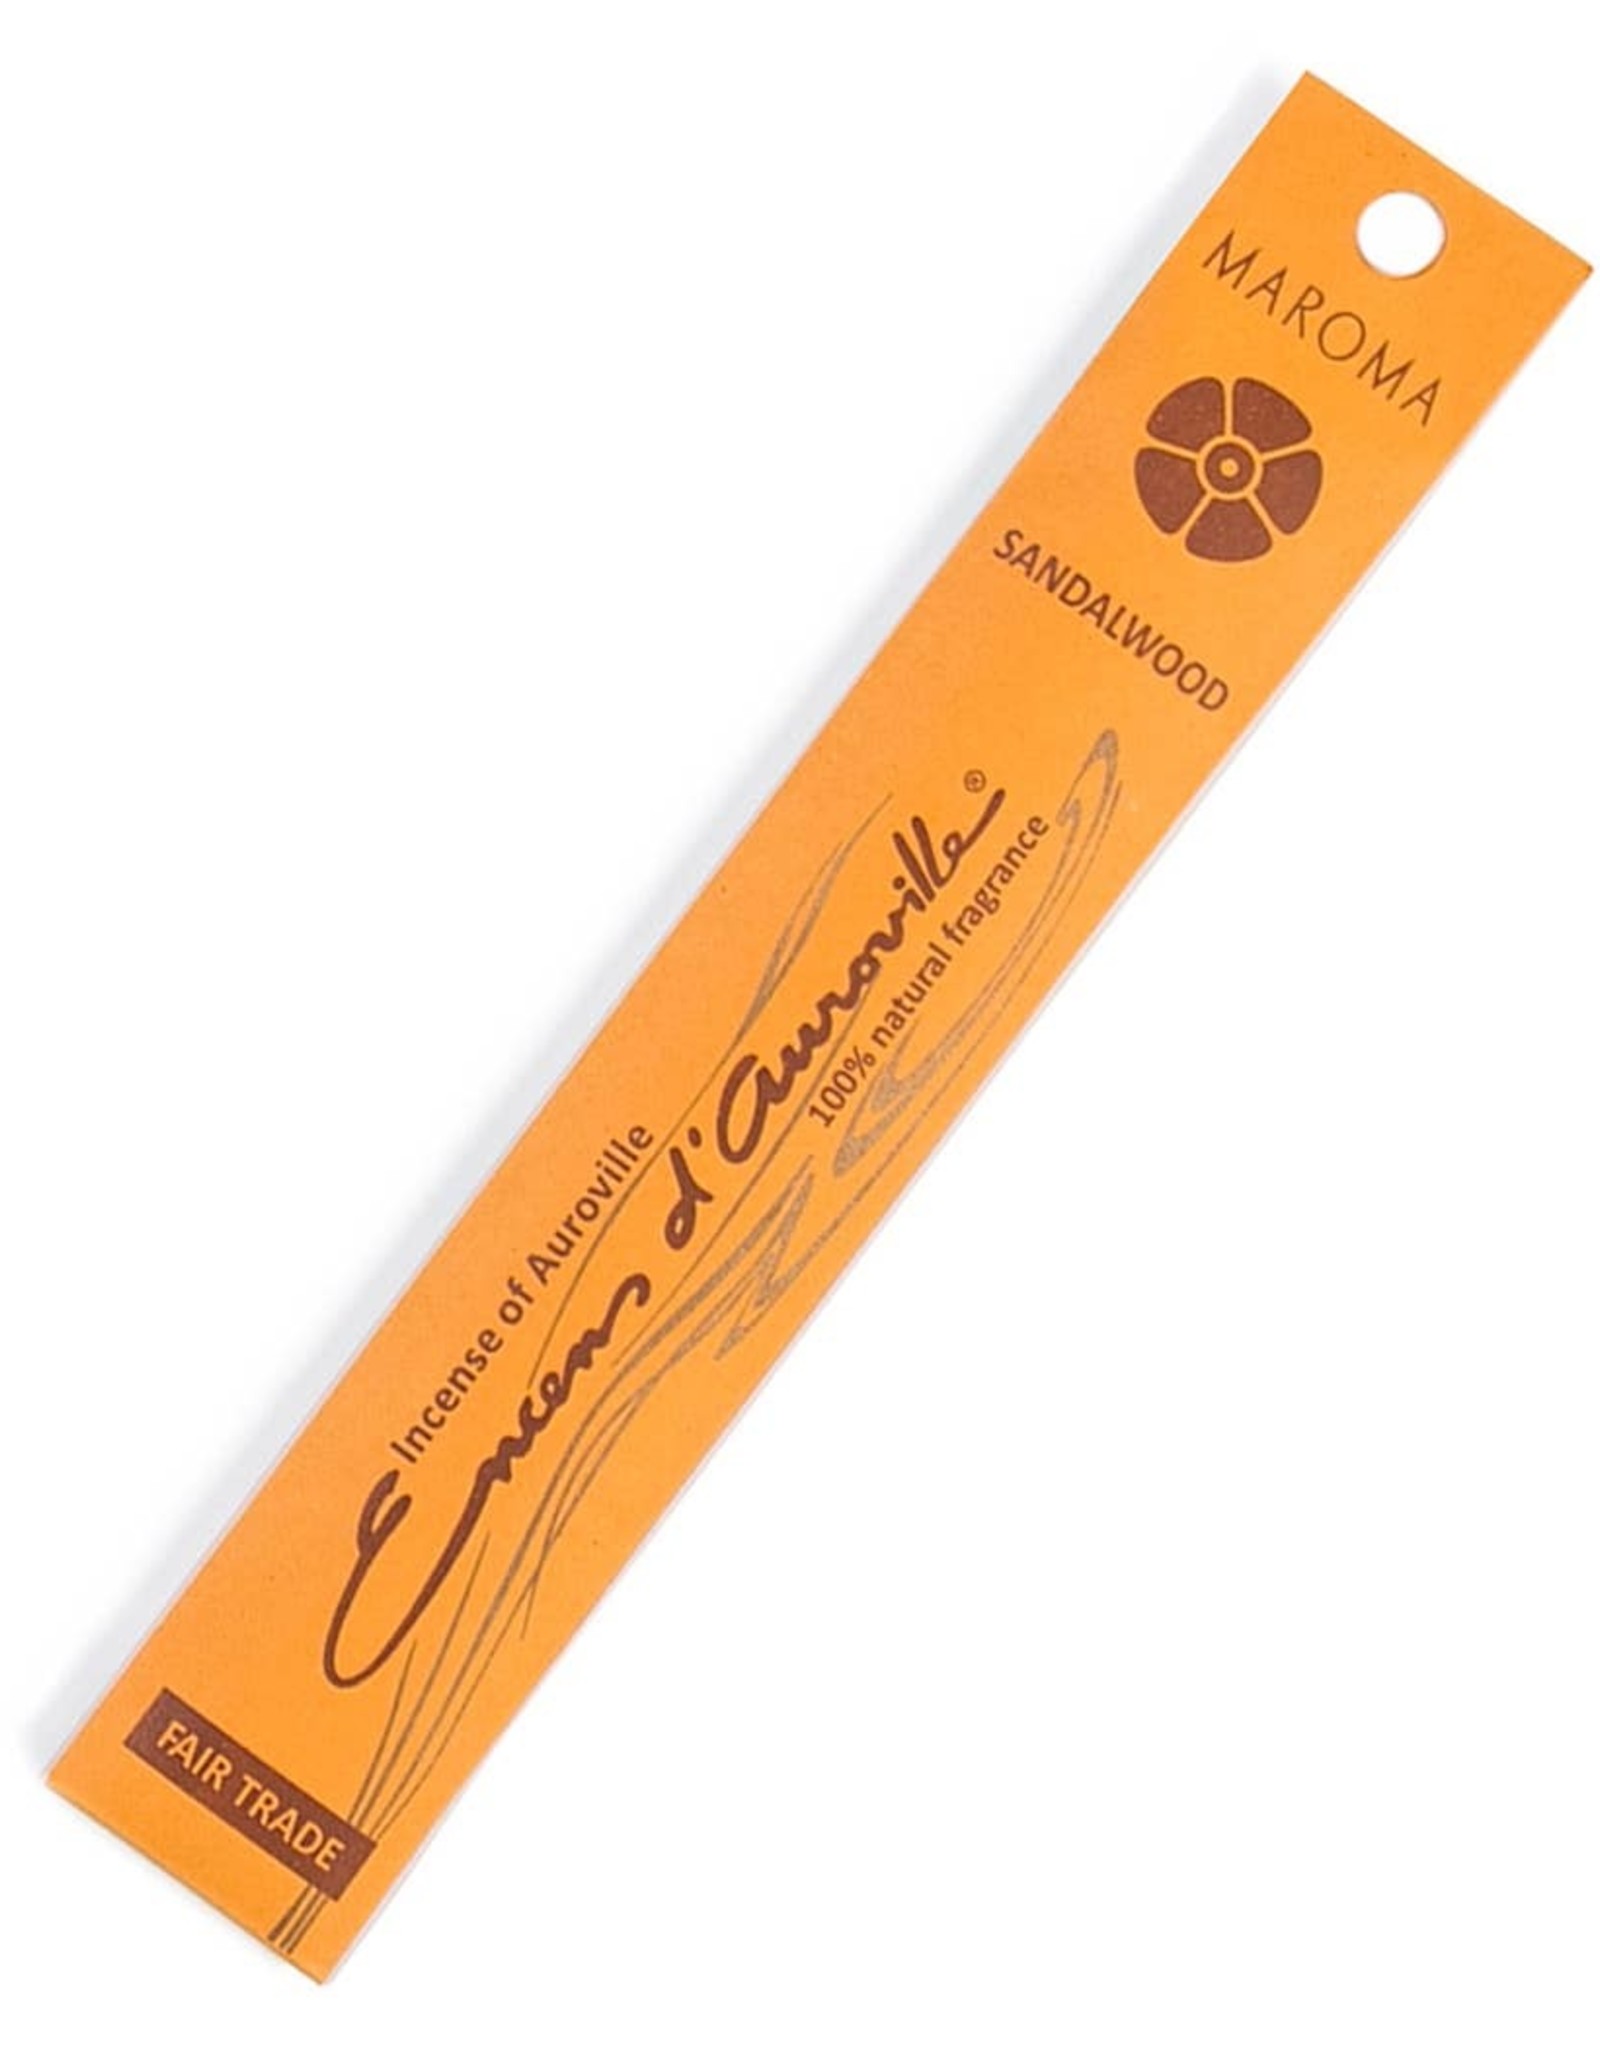 Maroma Sandalwood Premium Stick Incense